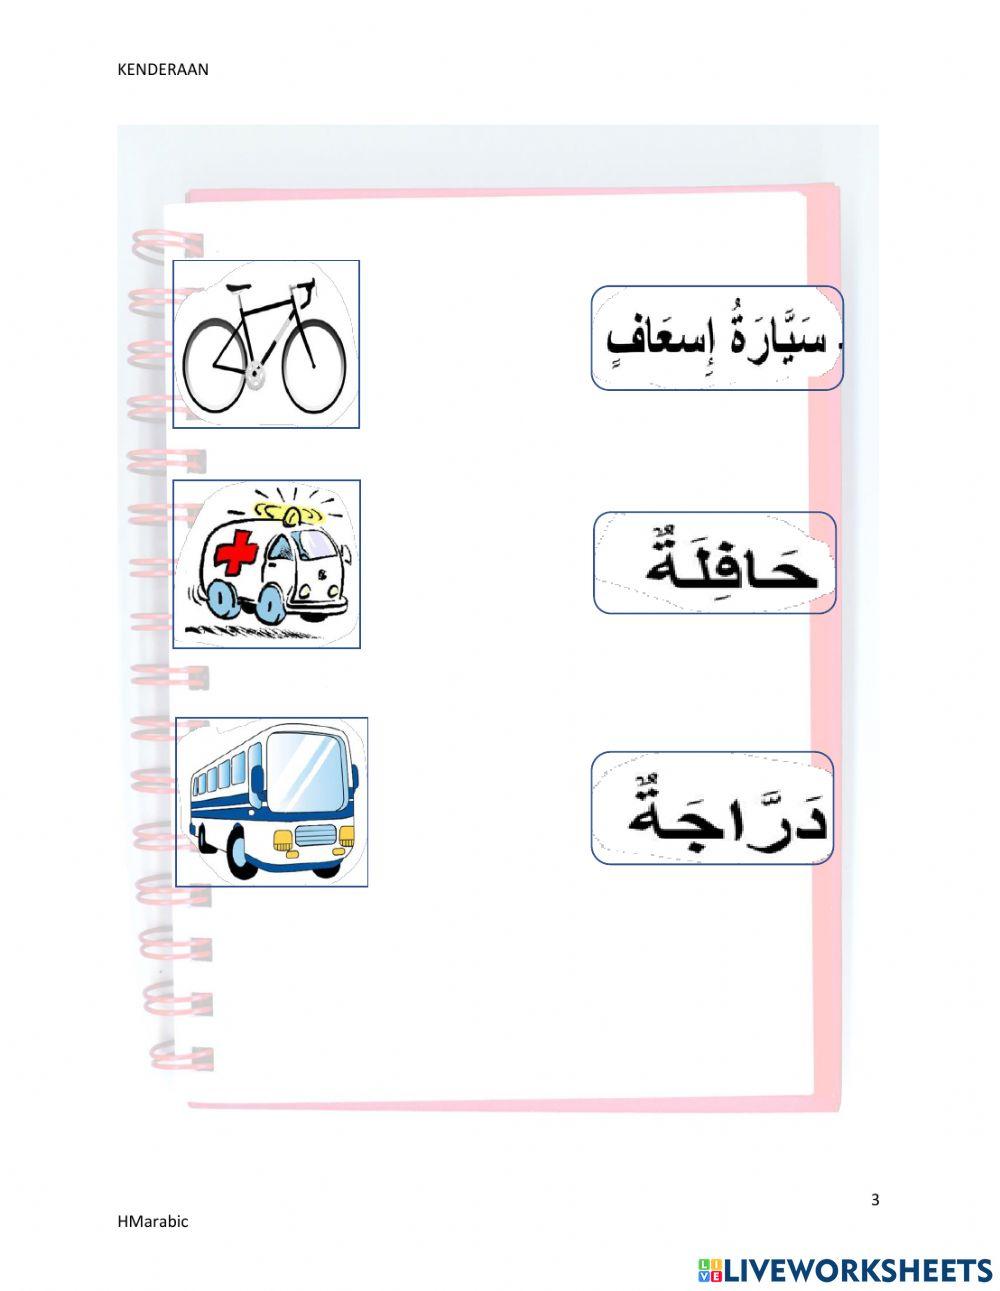 Kenderaan bahasa arab